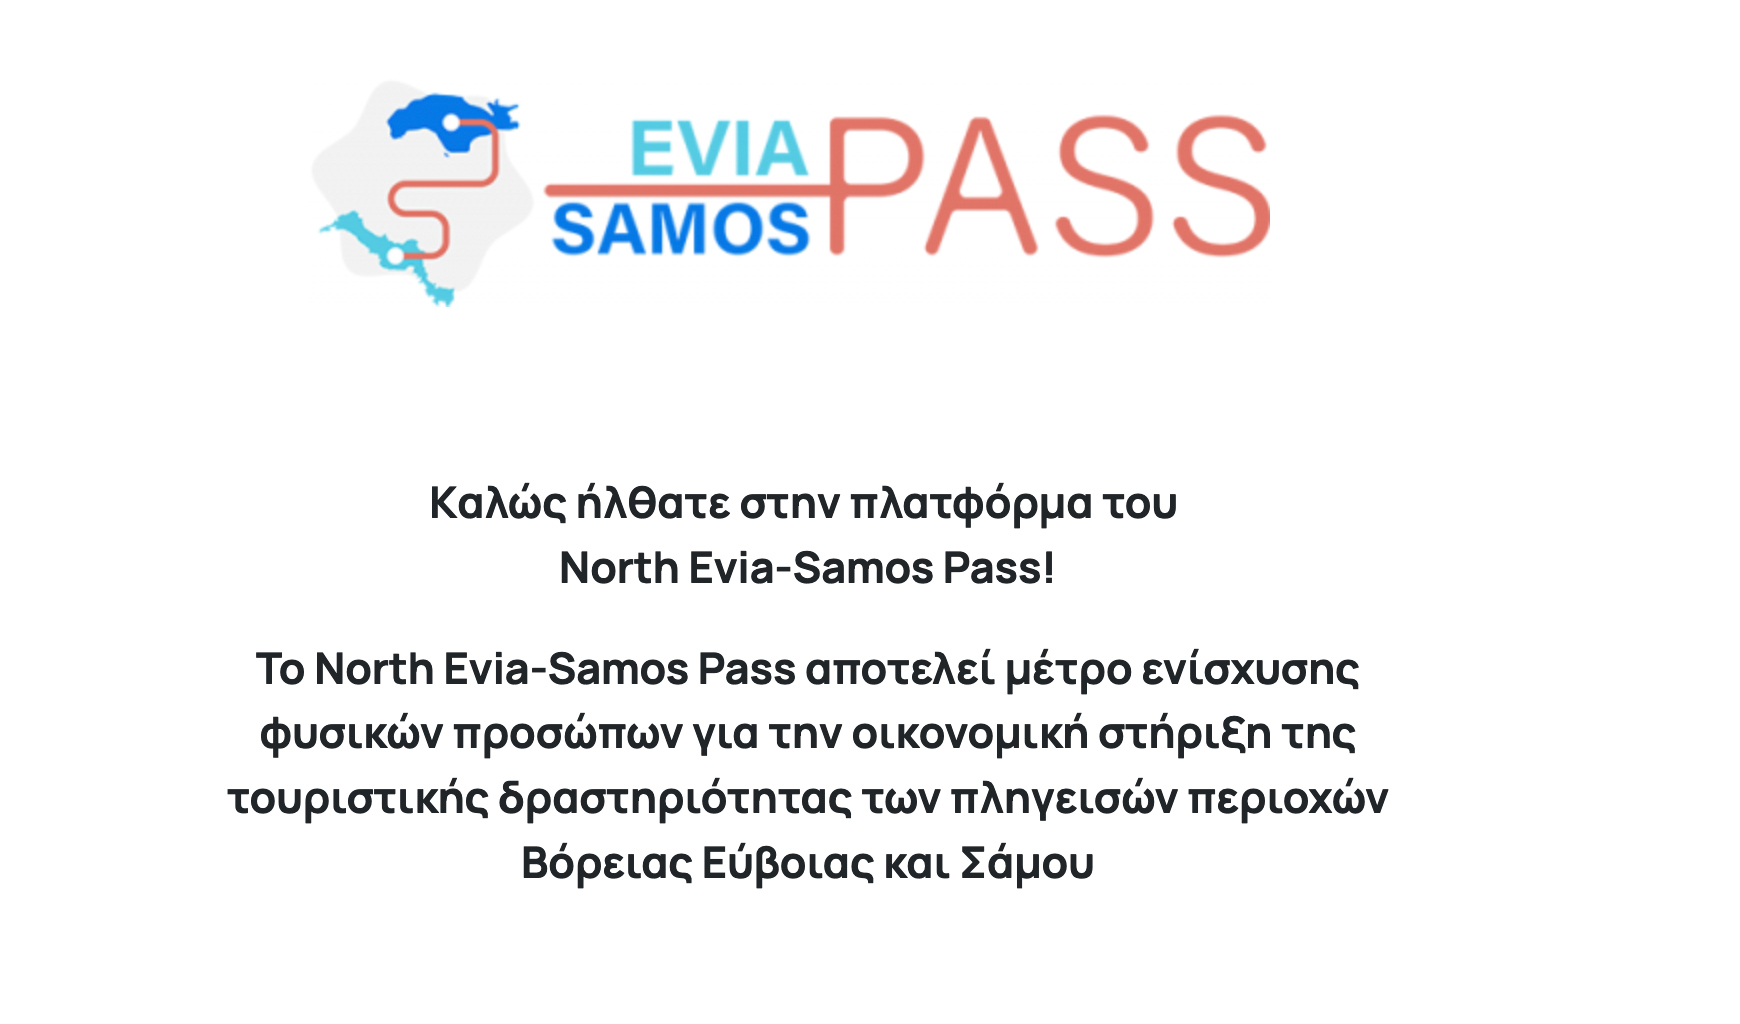 North Evia – Samos Pass: Όσα vouchers δεν απορροφηθούν τον Σεπτέμβριο θα διατεθούν τον Οκτώβριο